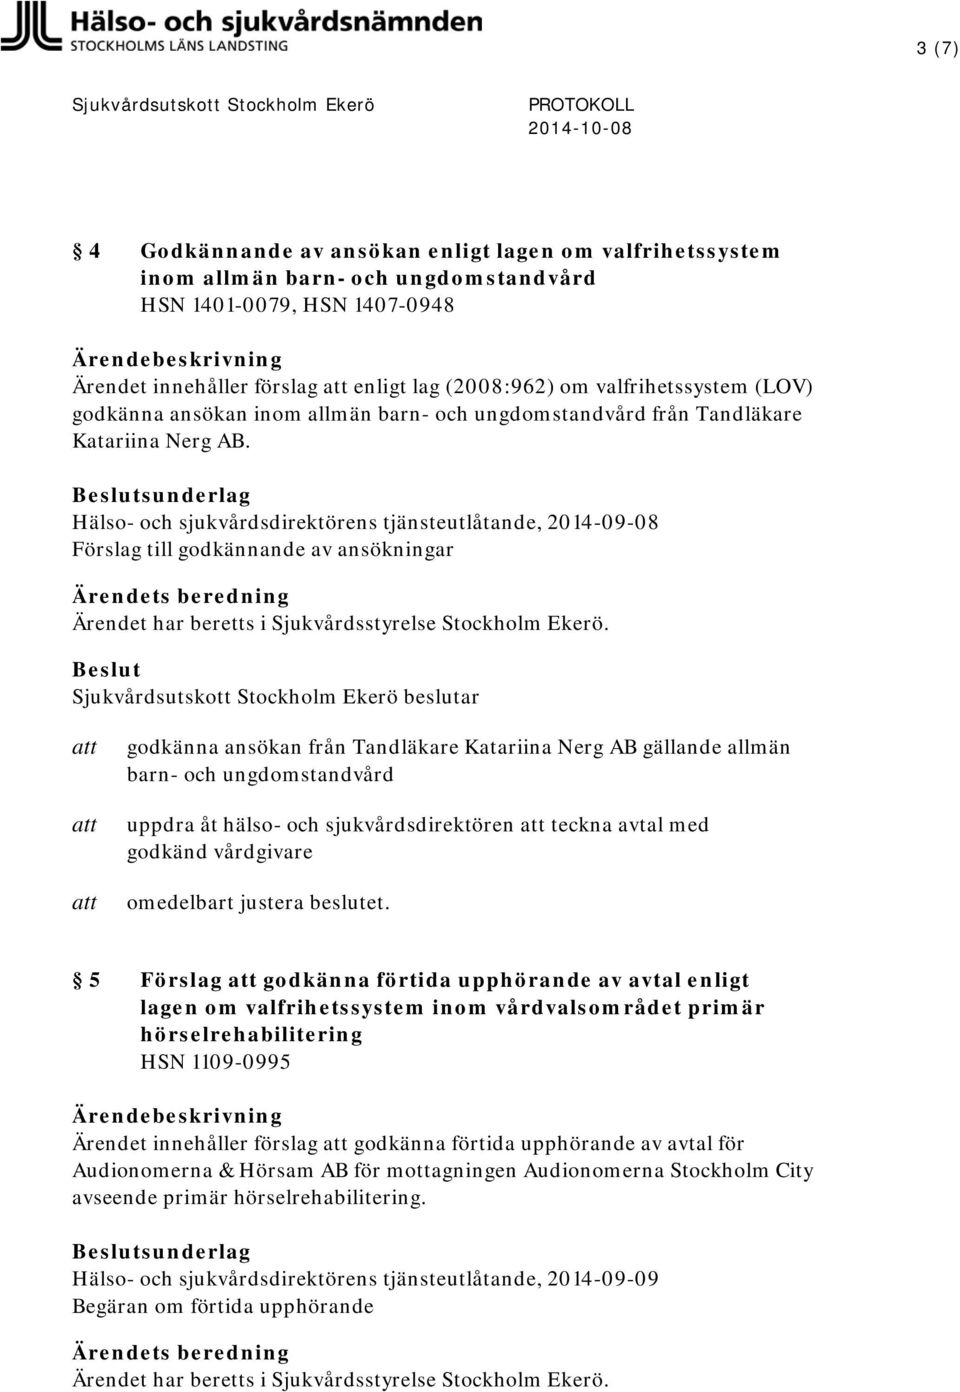 Hälso- och sjukvårdsdirektörens tjänsteutlåtande, 2014-09-08 Förslag till godkännande av ansökningar godkänna ansökan från Tandläkare Katariina Nerg AB gällande allmän barn- och ungdomstandvård